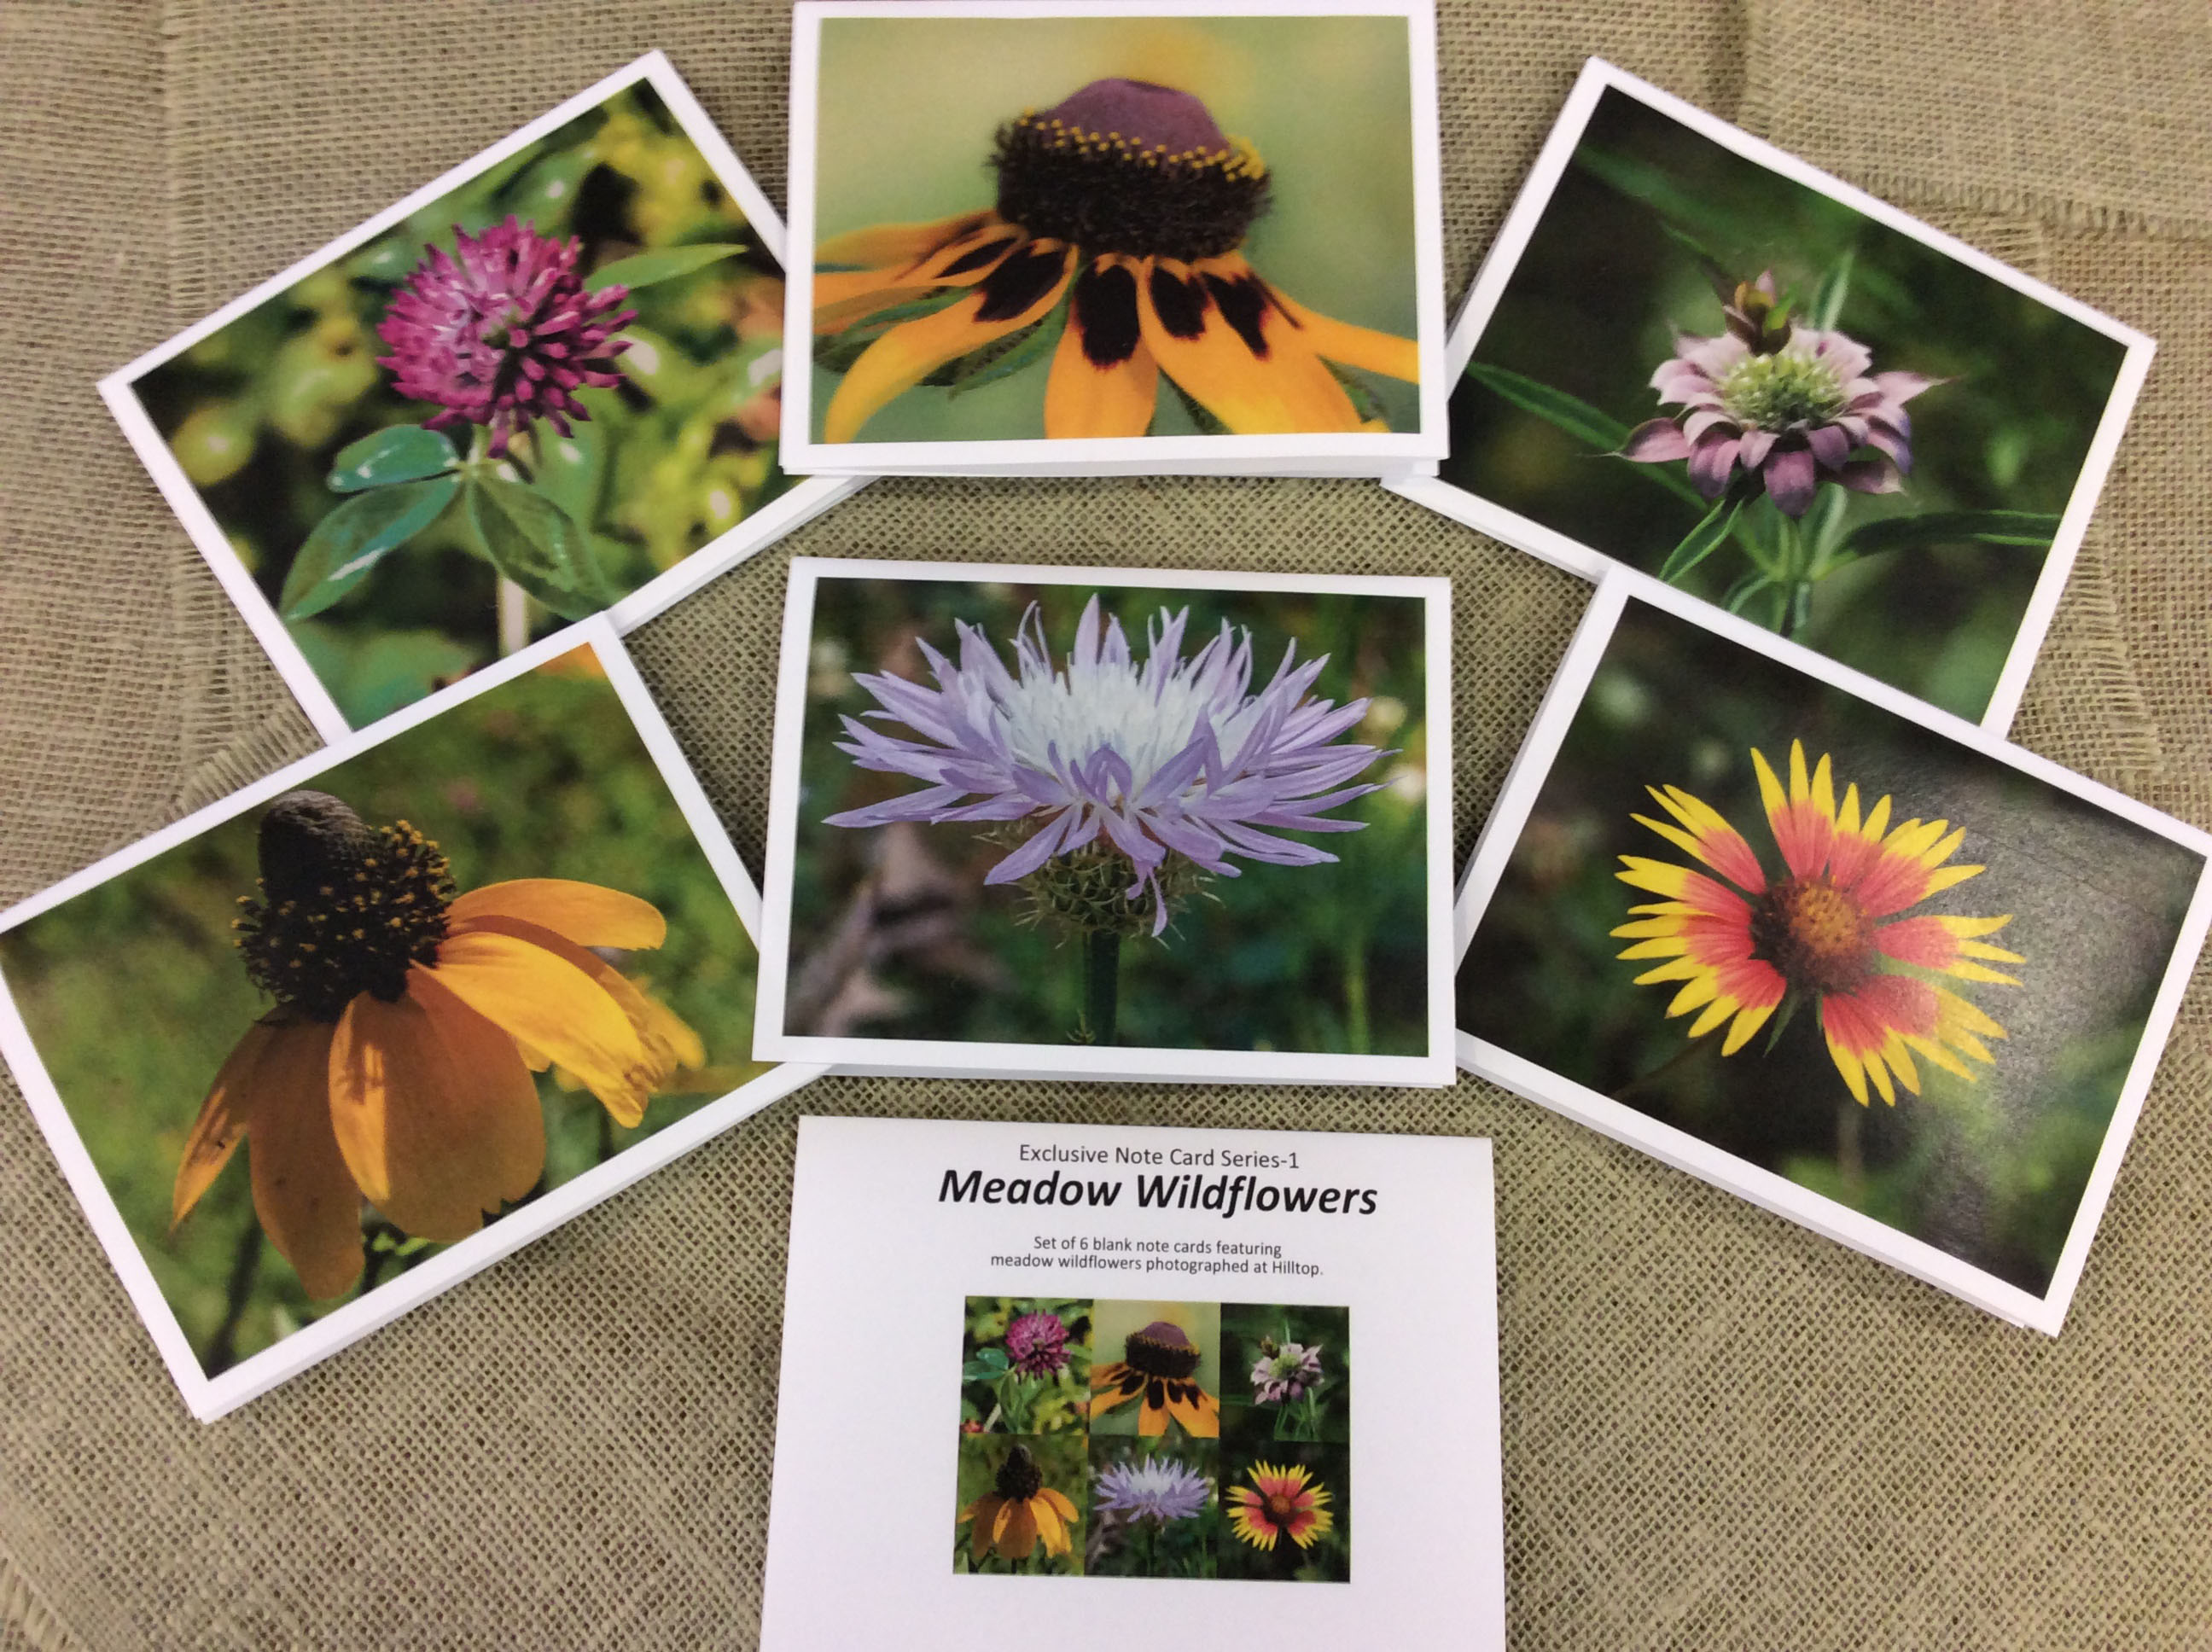 display of Meadow Wildflowers notecard set